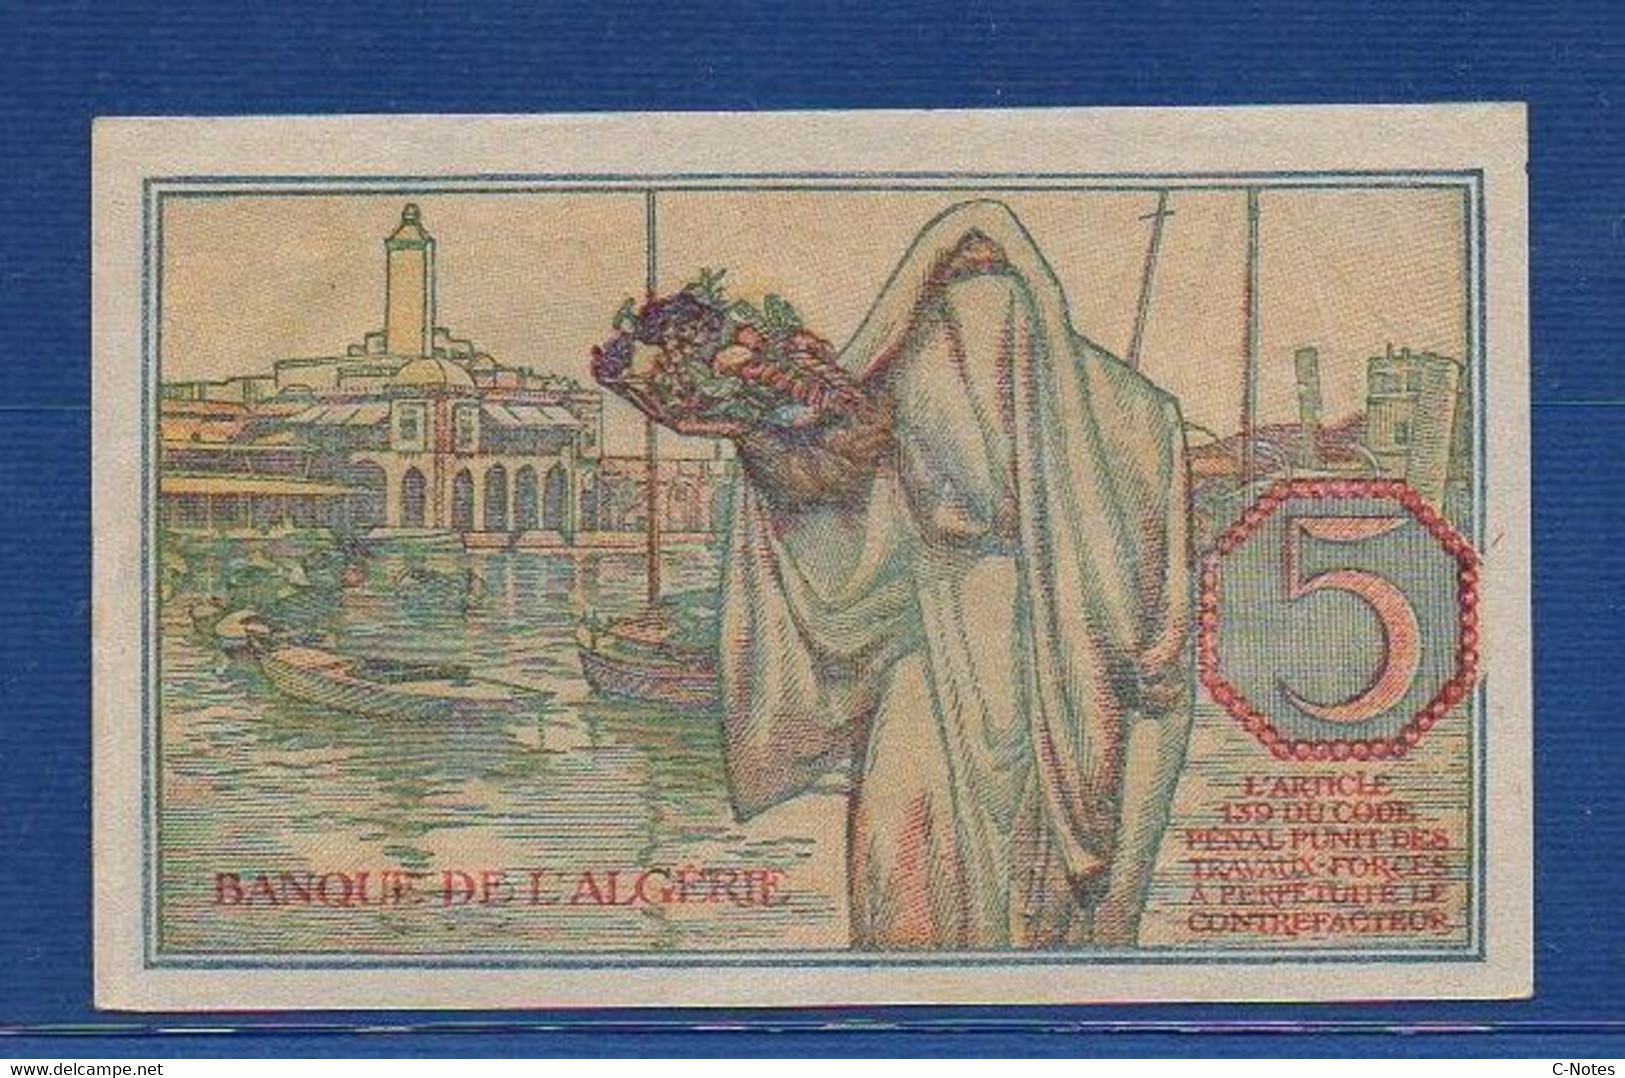 ALGERIA - P. 94b – 5 Francs 1944 AUNC,  Serie W.1010 970 - Algérie